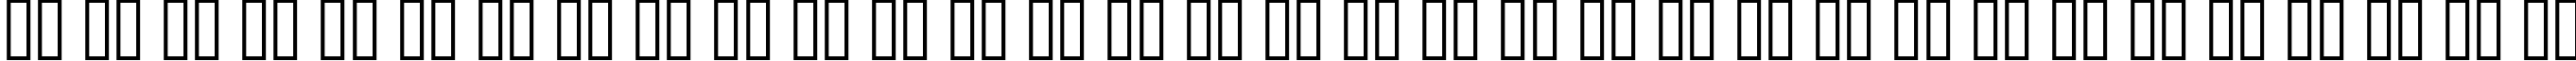 Пример написания русского алфавита шрифтом MGI Archon   DemiBold